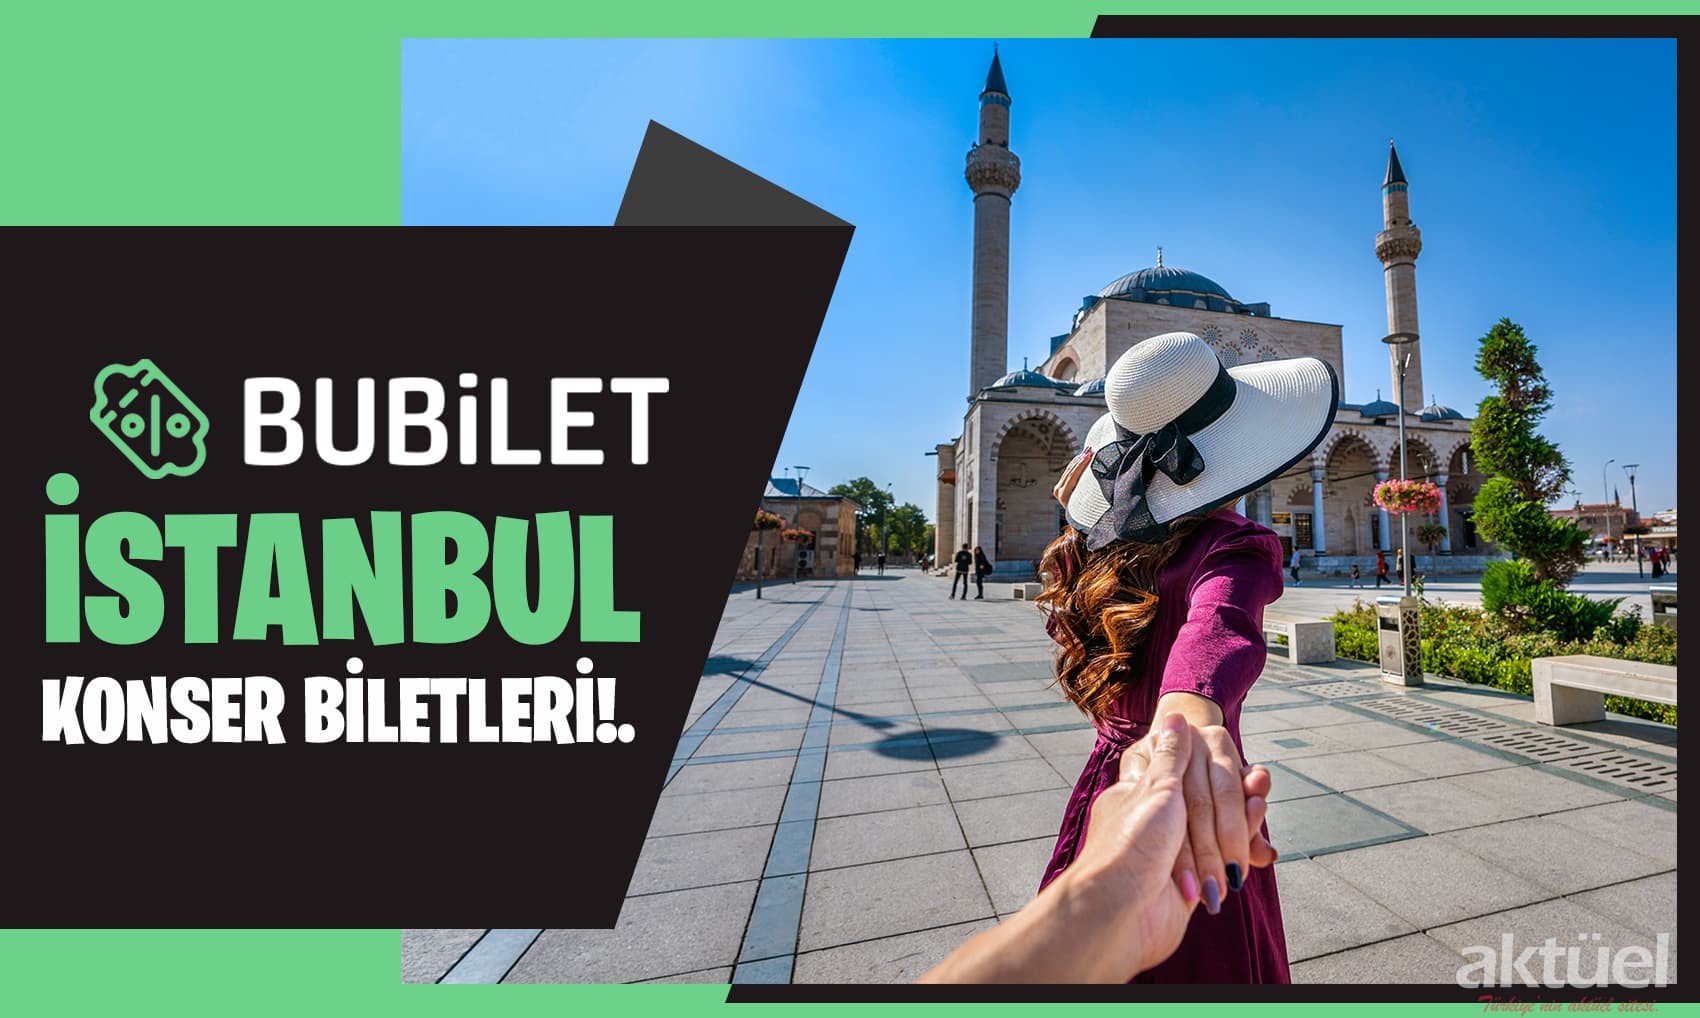 Uygun Fiyatlar İle İstanbul Konser Biletleri artık Bubilet’te